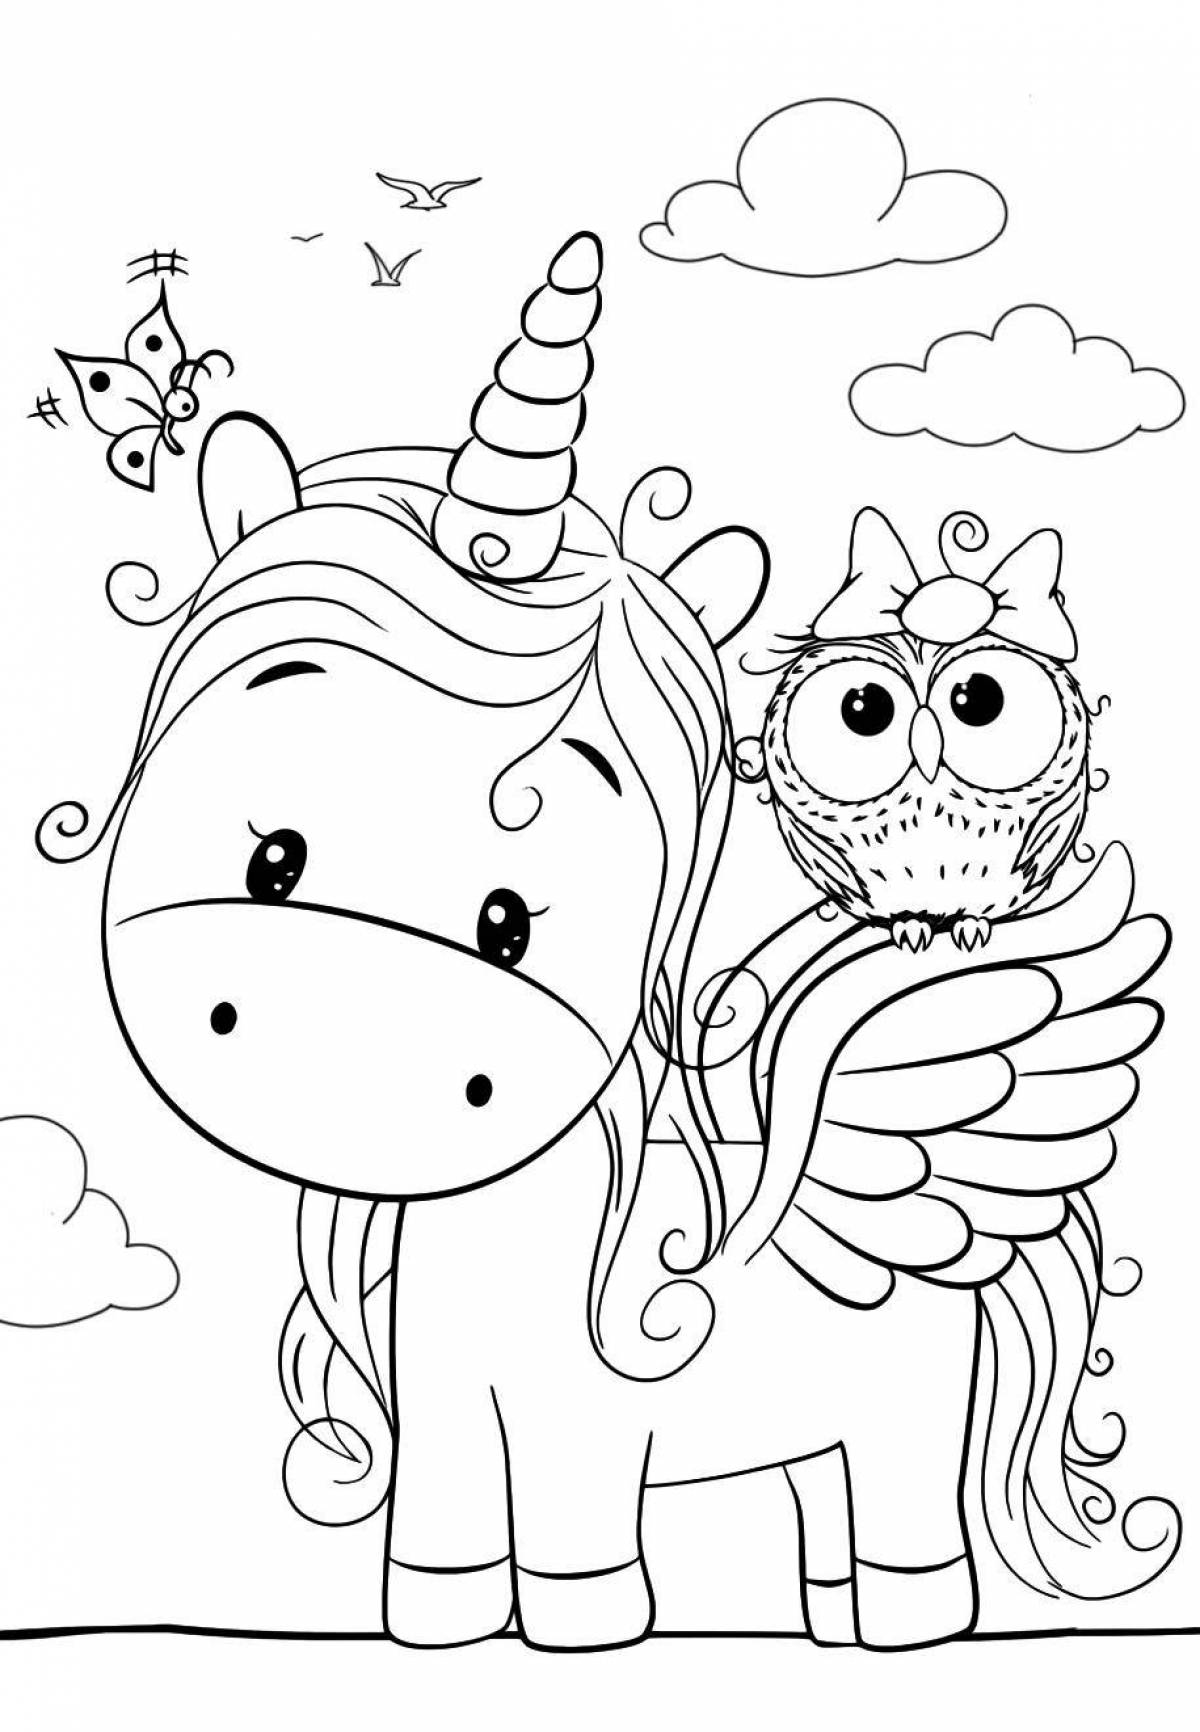 Elegant unicorn coloring book